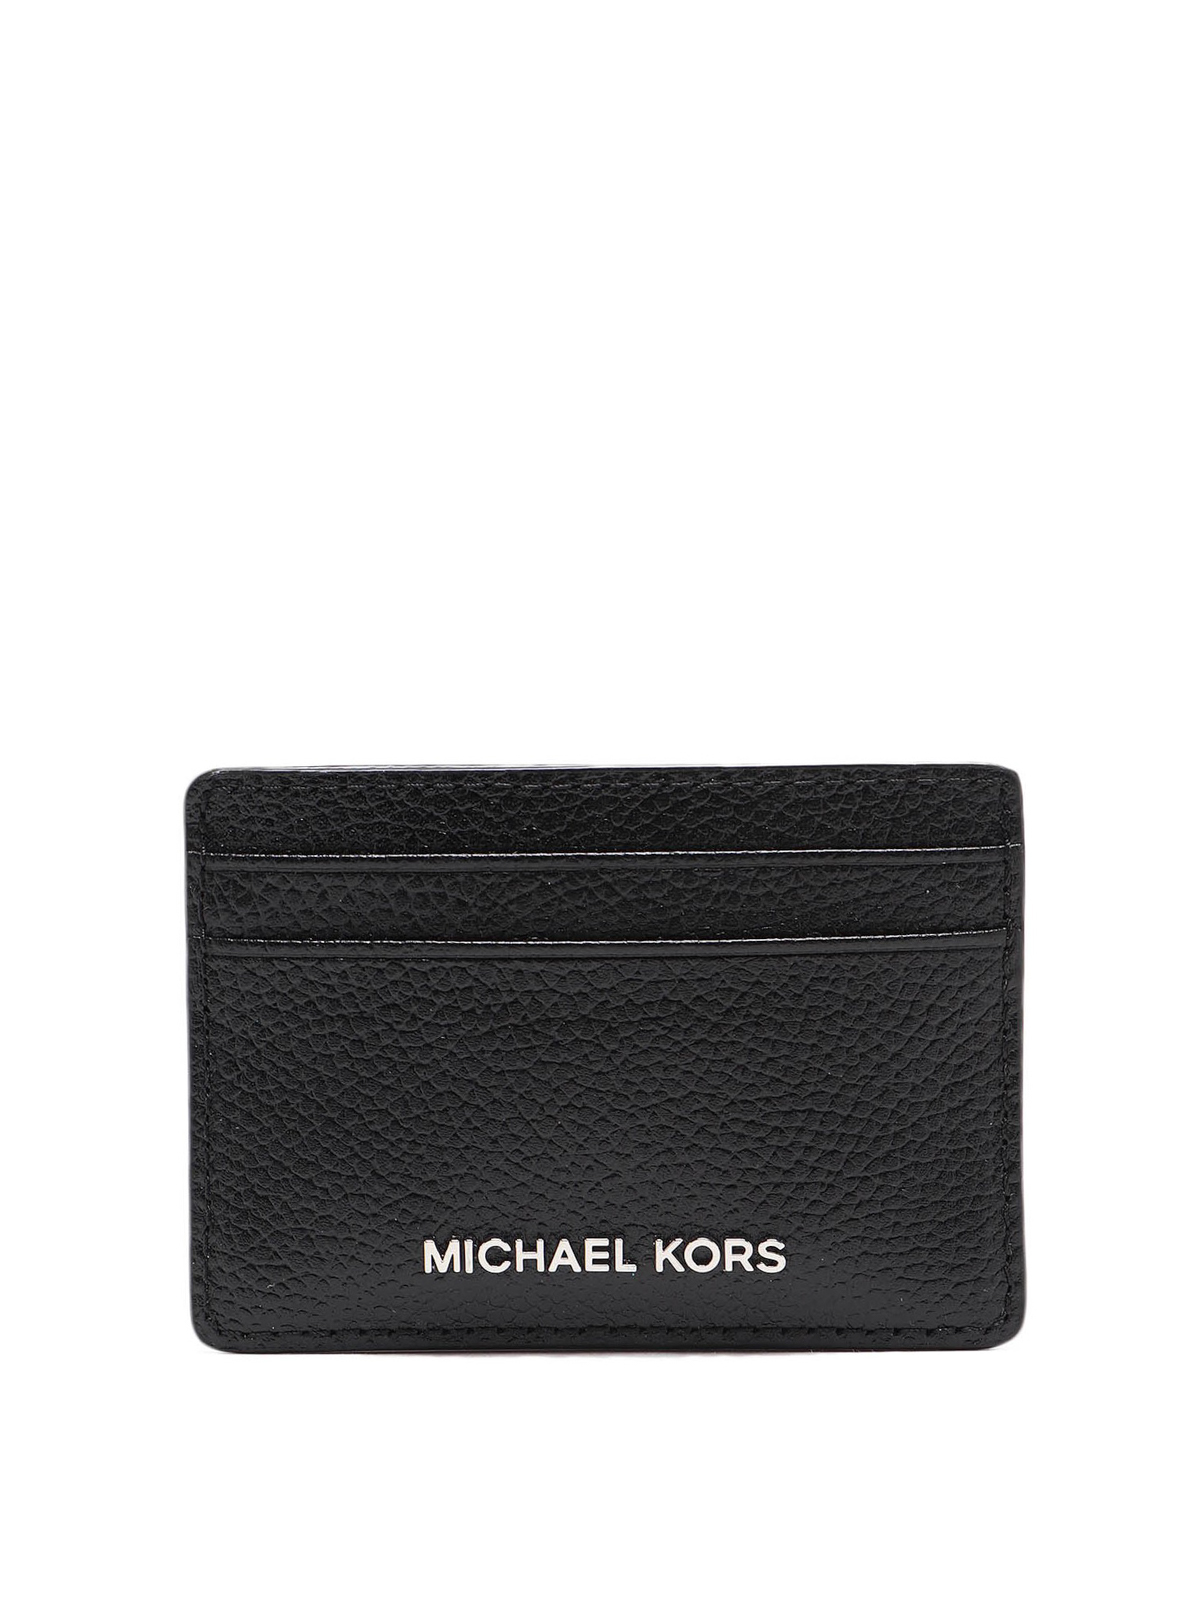 Michael Kors Hammered Leather Cardholder In Black